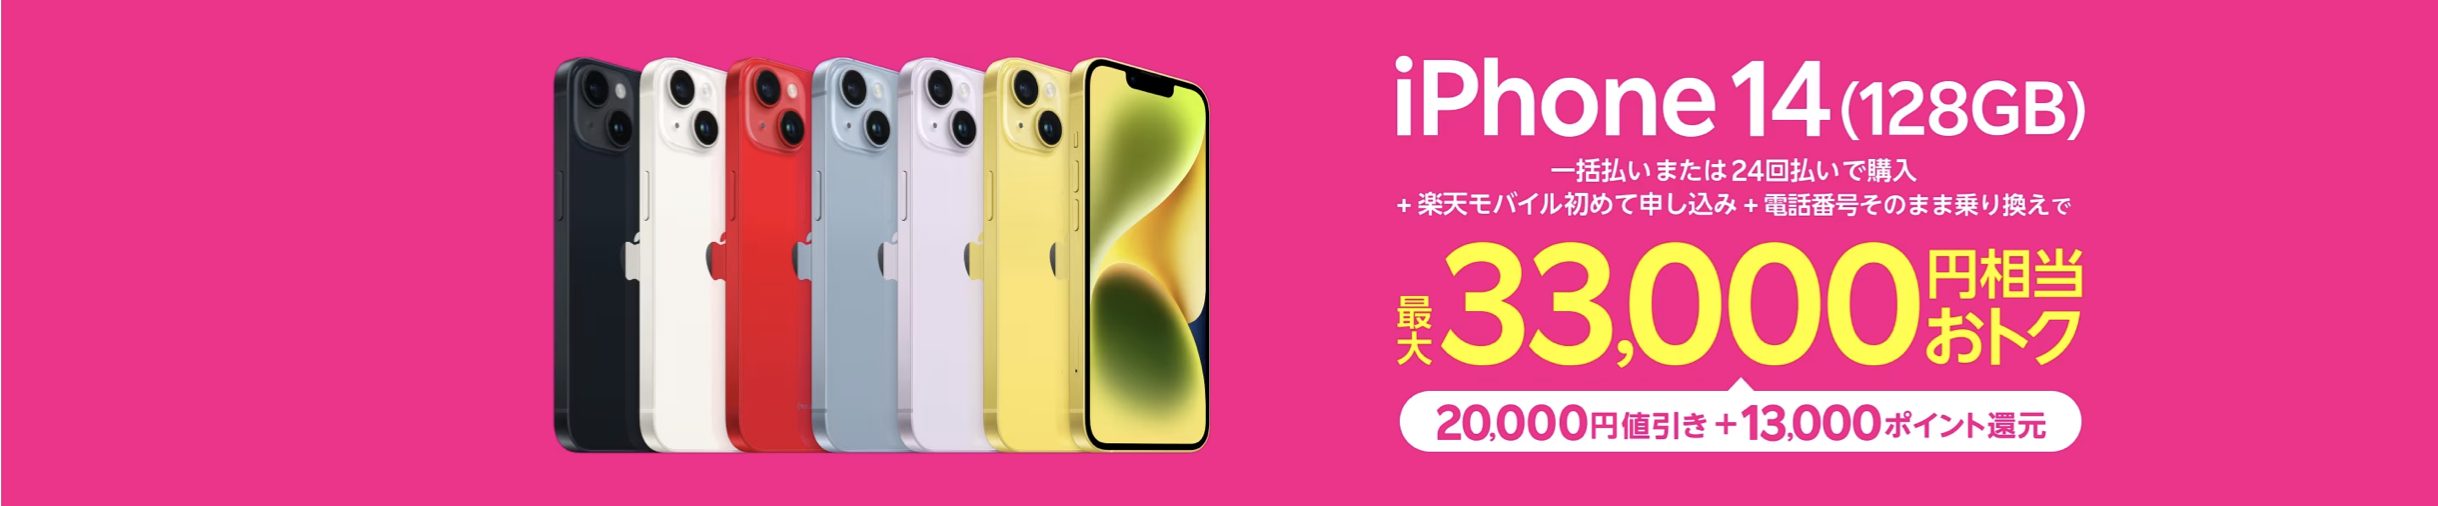 楽天モバイル_iPhone 14 (128GB)キャンペーン